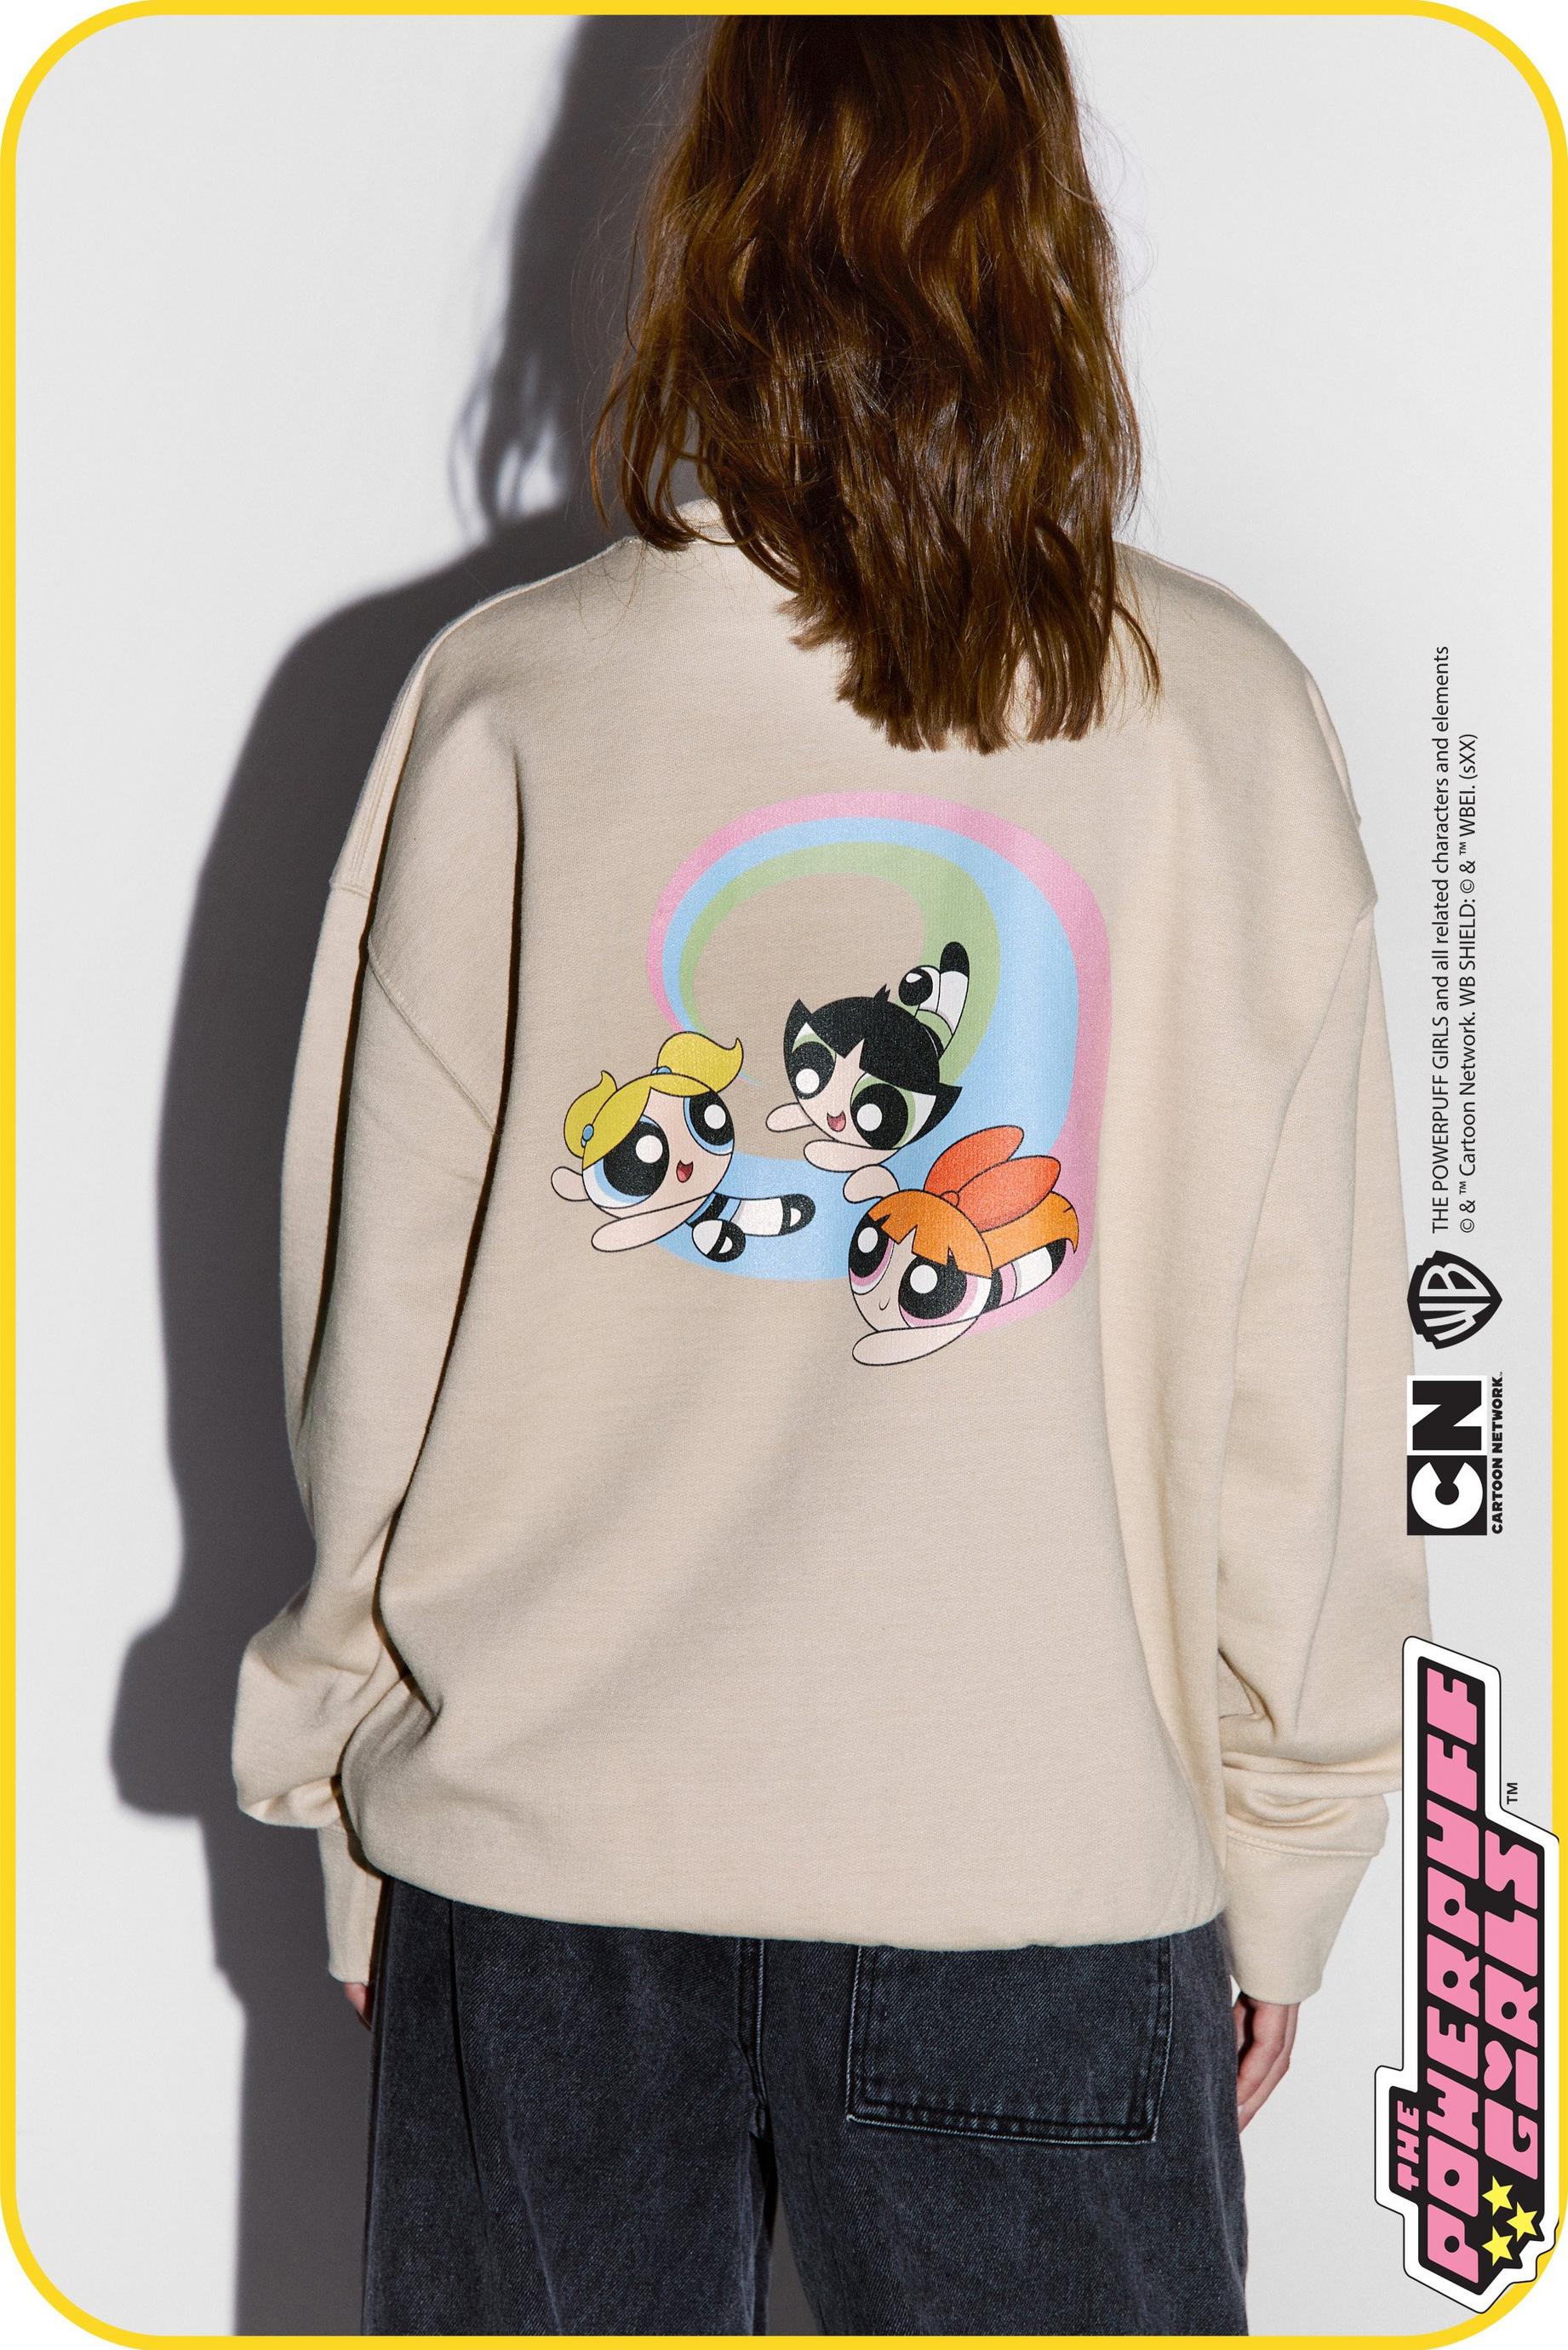 The Powerpuff Girls Graphic Sweatshirt